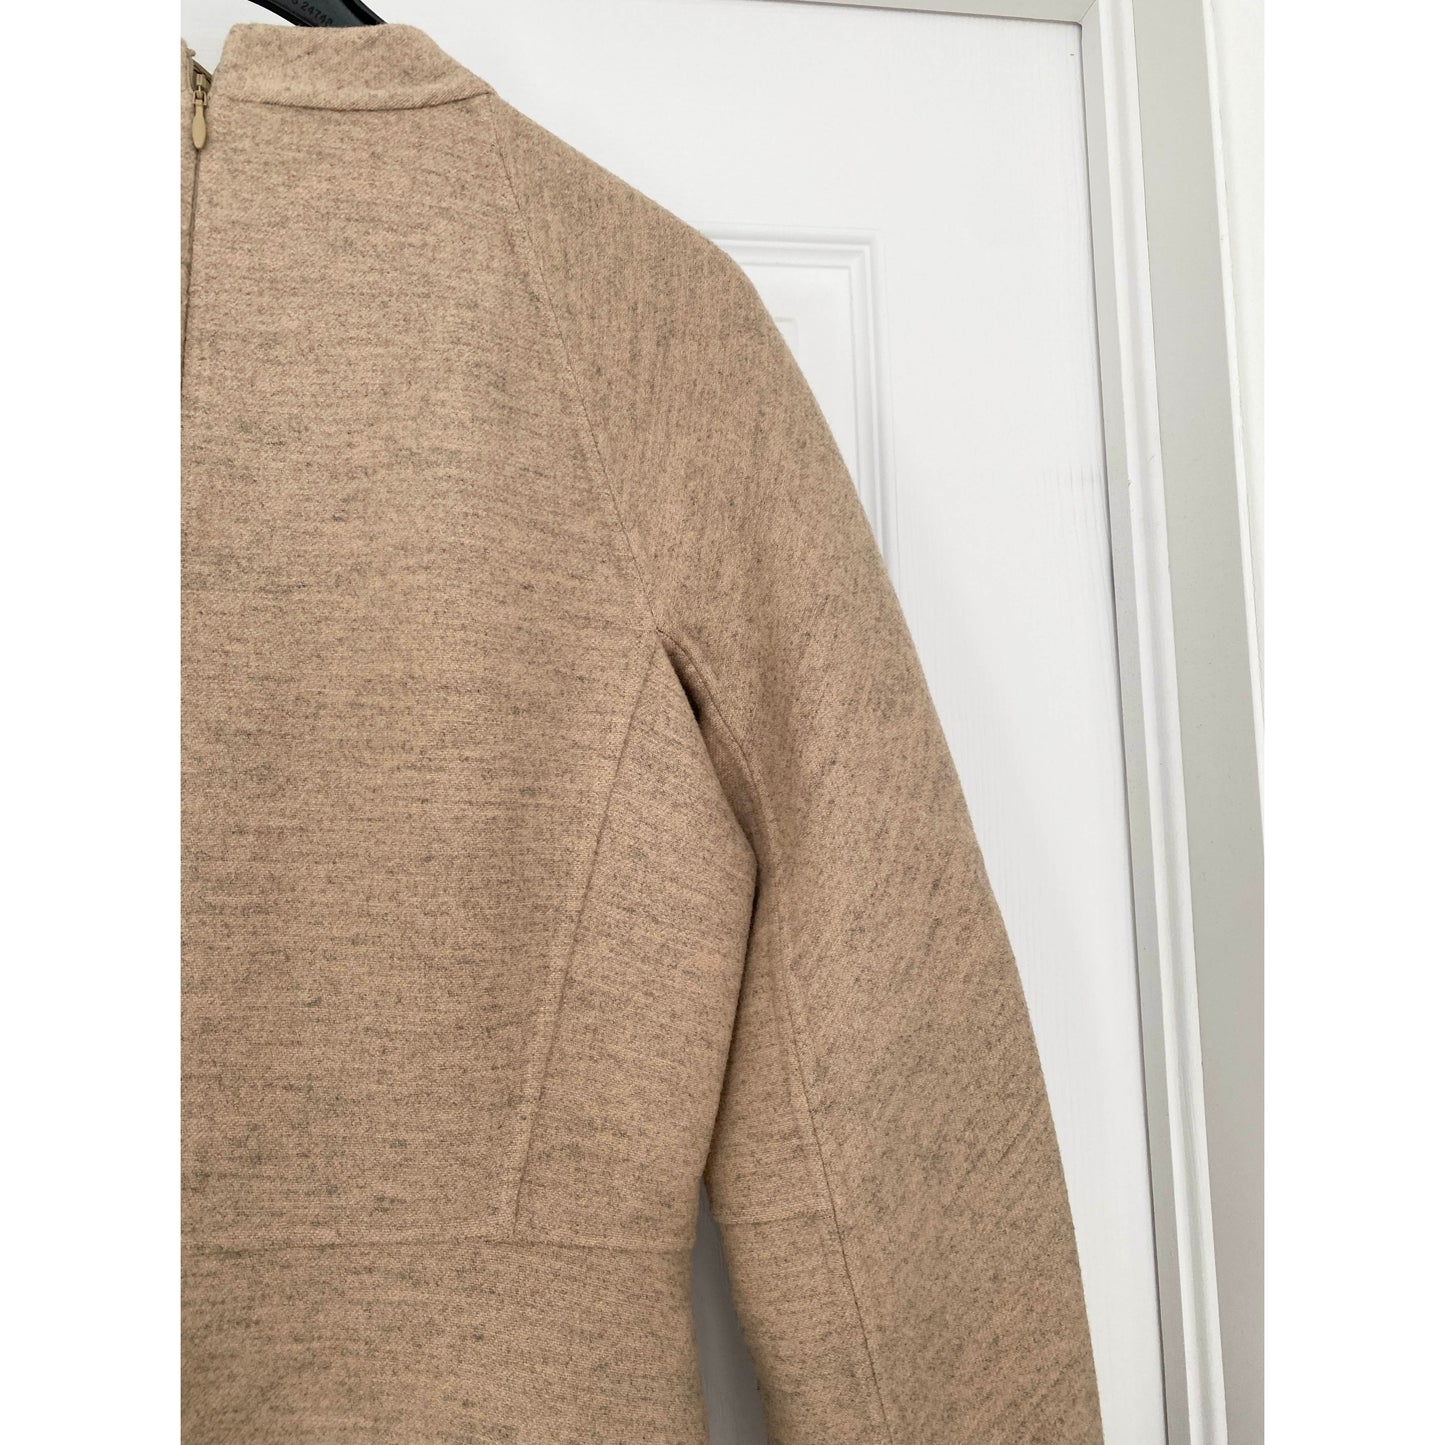 Jil Sander "LEVEN" Structured Beige Wool Dress, size 34 (fits like a size 4/6)